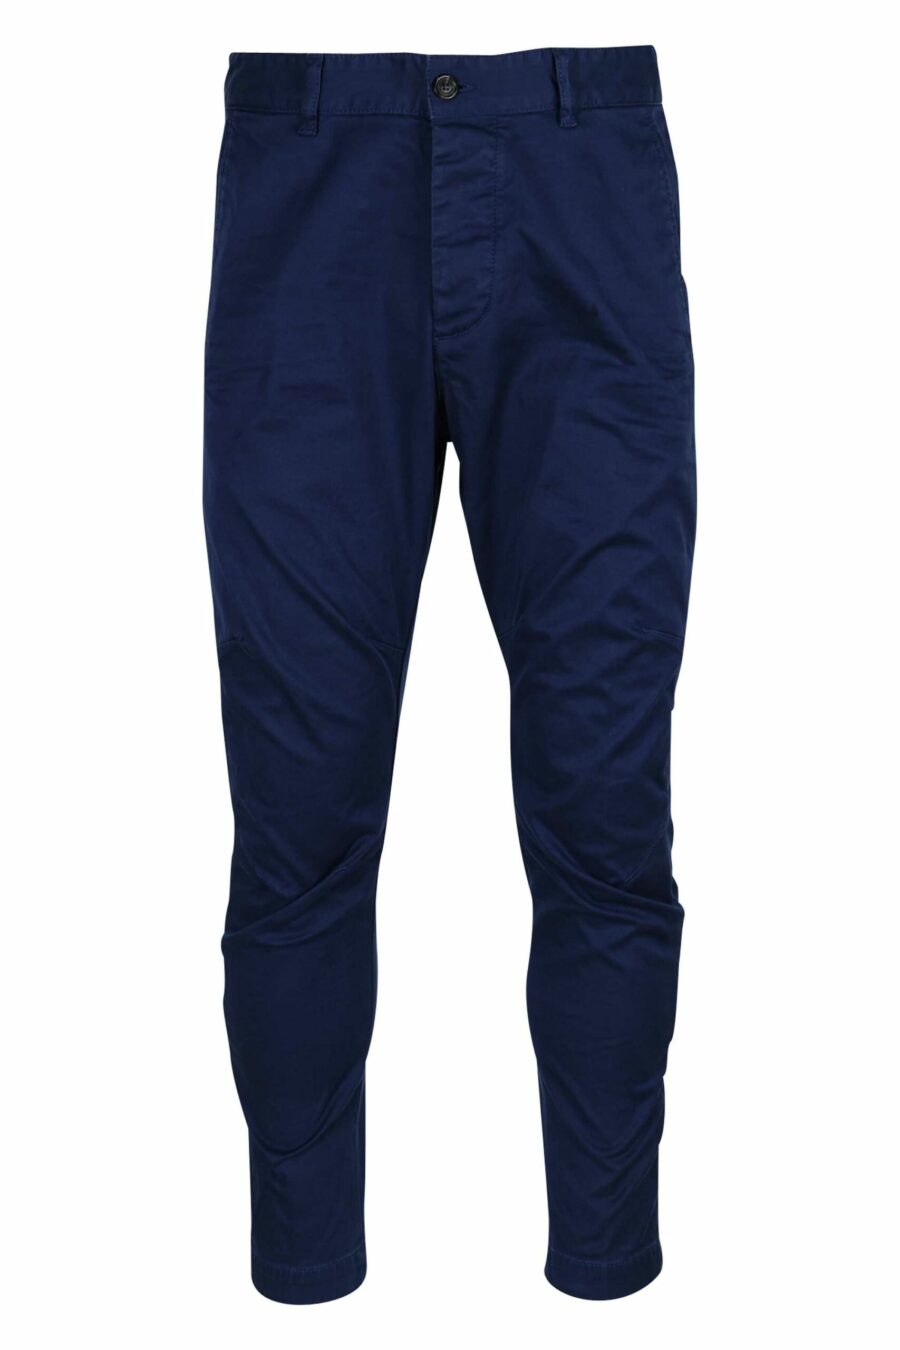 Pantalon "sexy chino" bleu foncé - 8054148321727